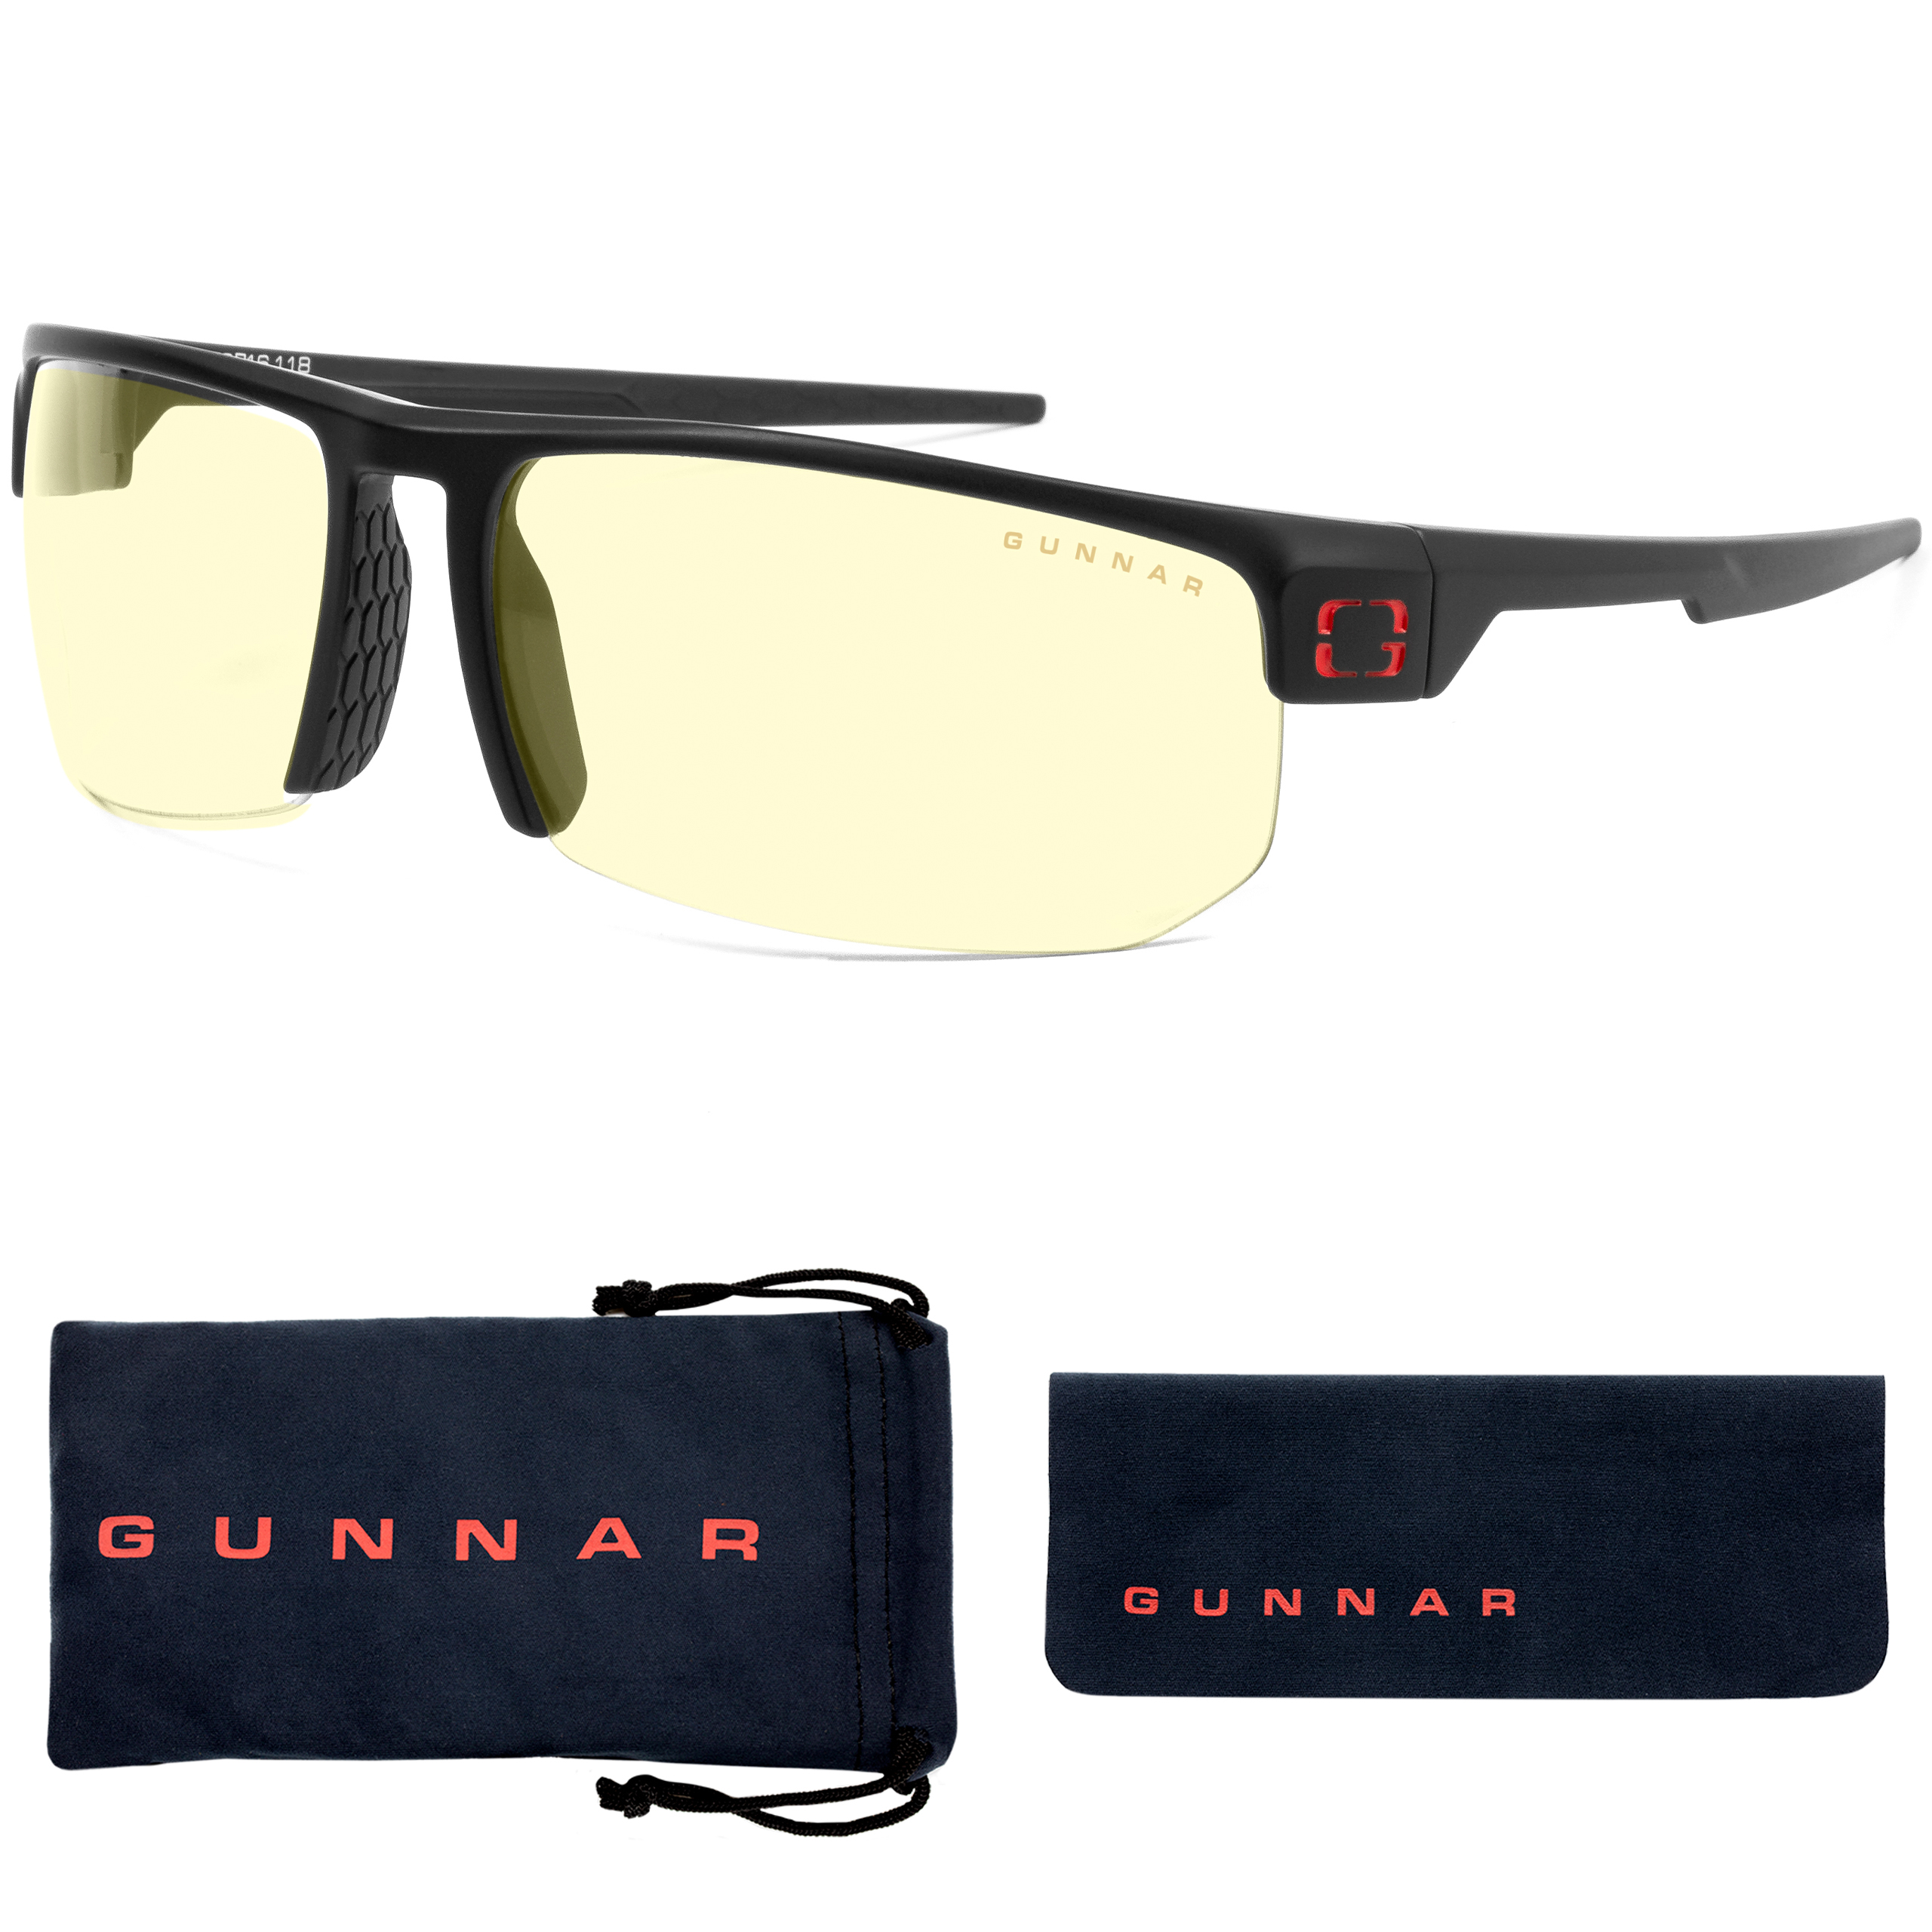 GUNNAR Torpedo, Onyx Rahmen, Amber Premium, Brille UV-Schutz, Tönung, Blaulichtfilter, Gaming